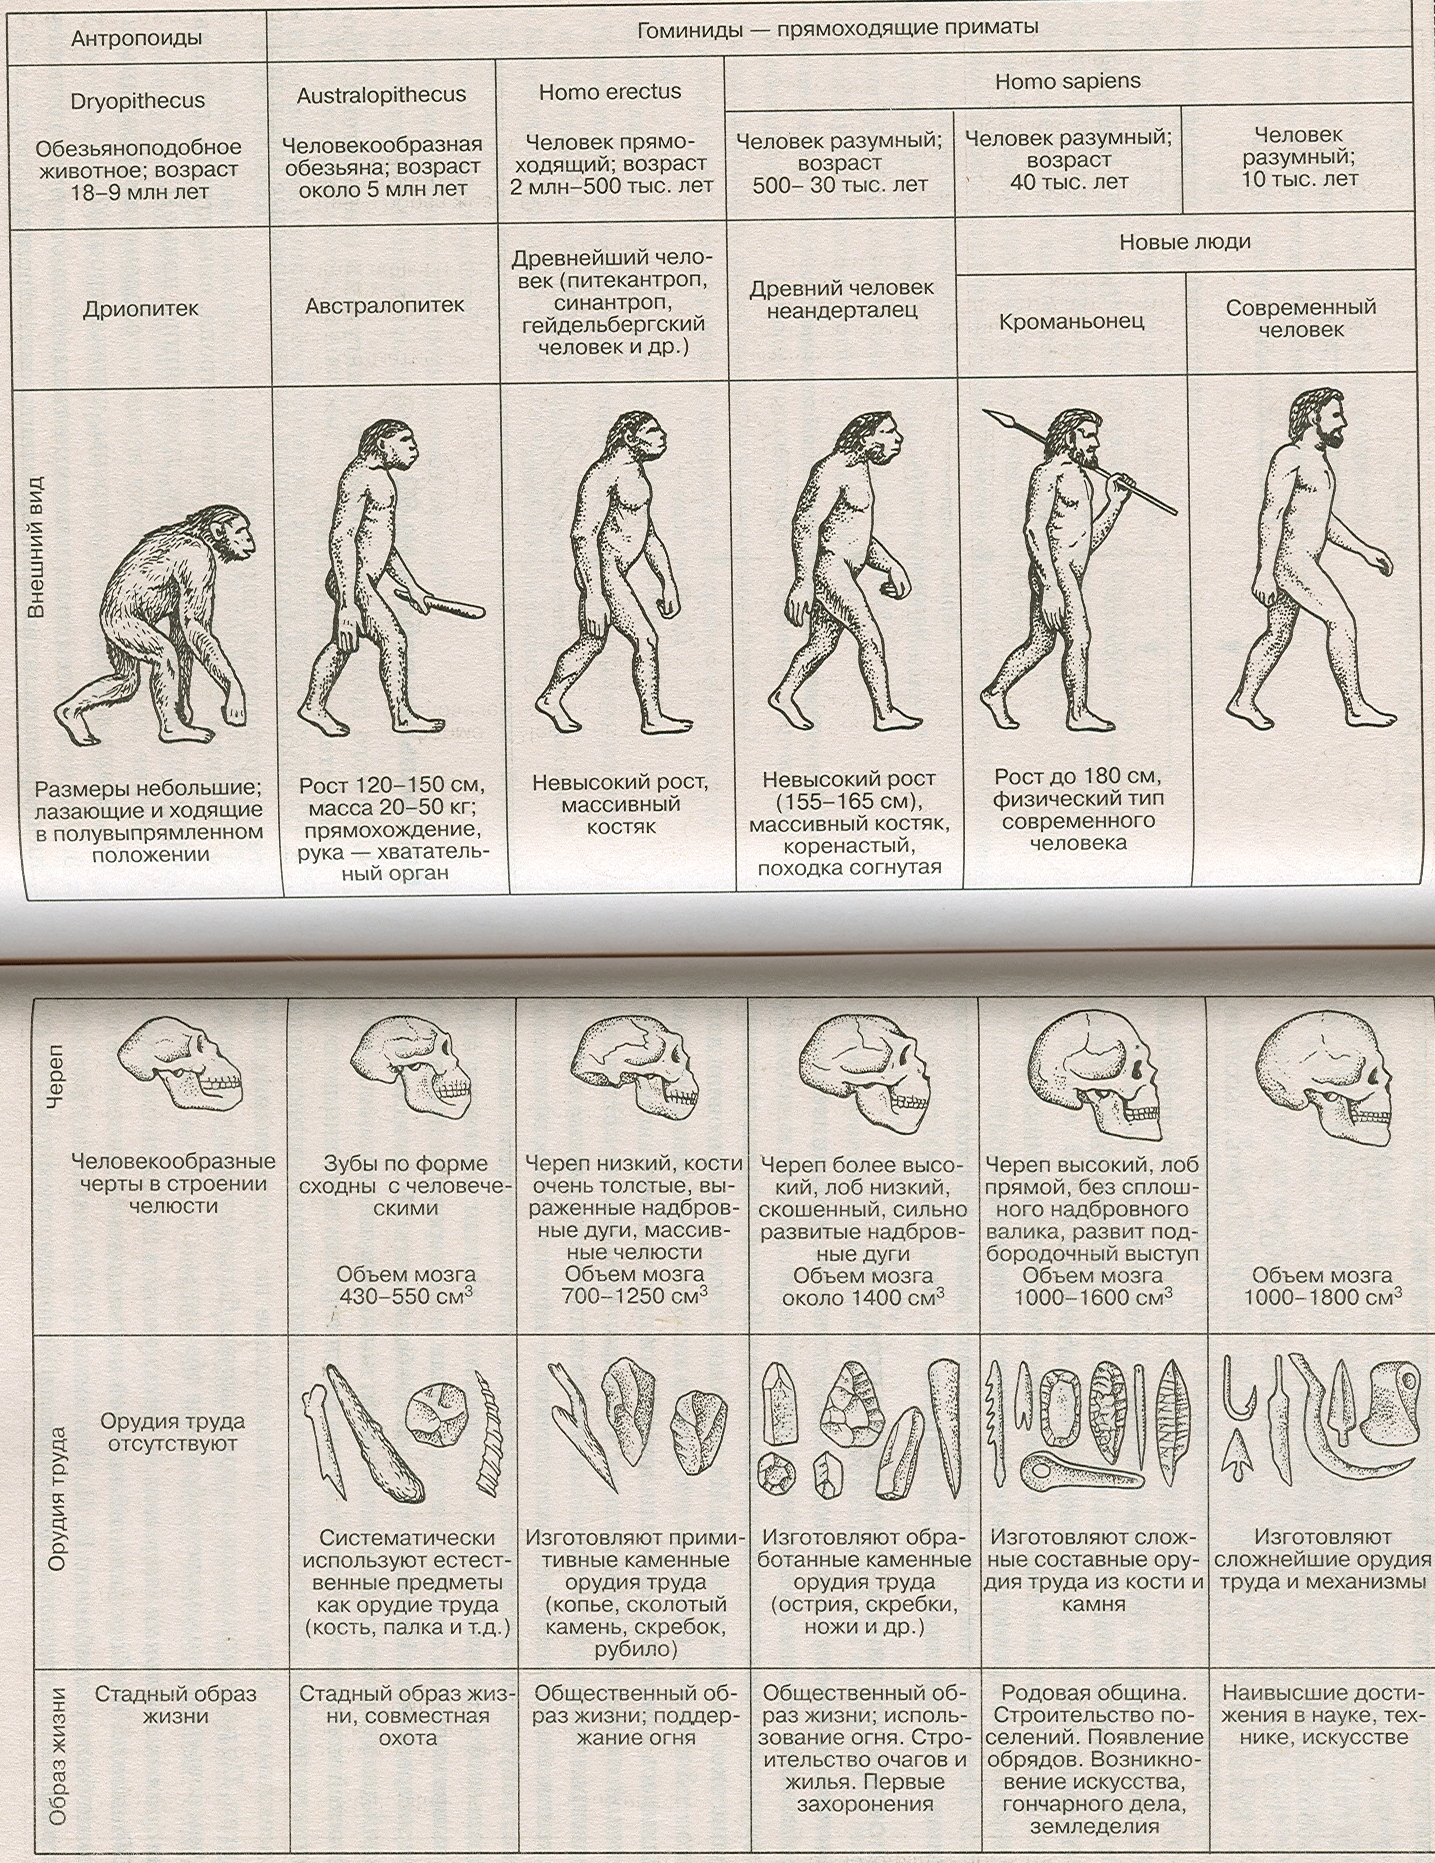 Этапы развития человека таблица этапы антропогенеза. Этапы эволюции человека таблица дриопитек. Основные стадии развития человека таблица. Стадия развития человека таблица по биологии.